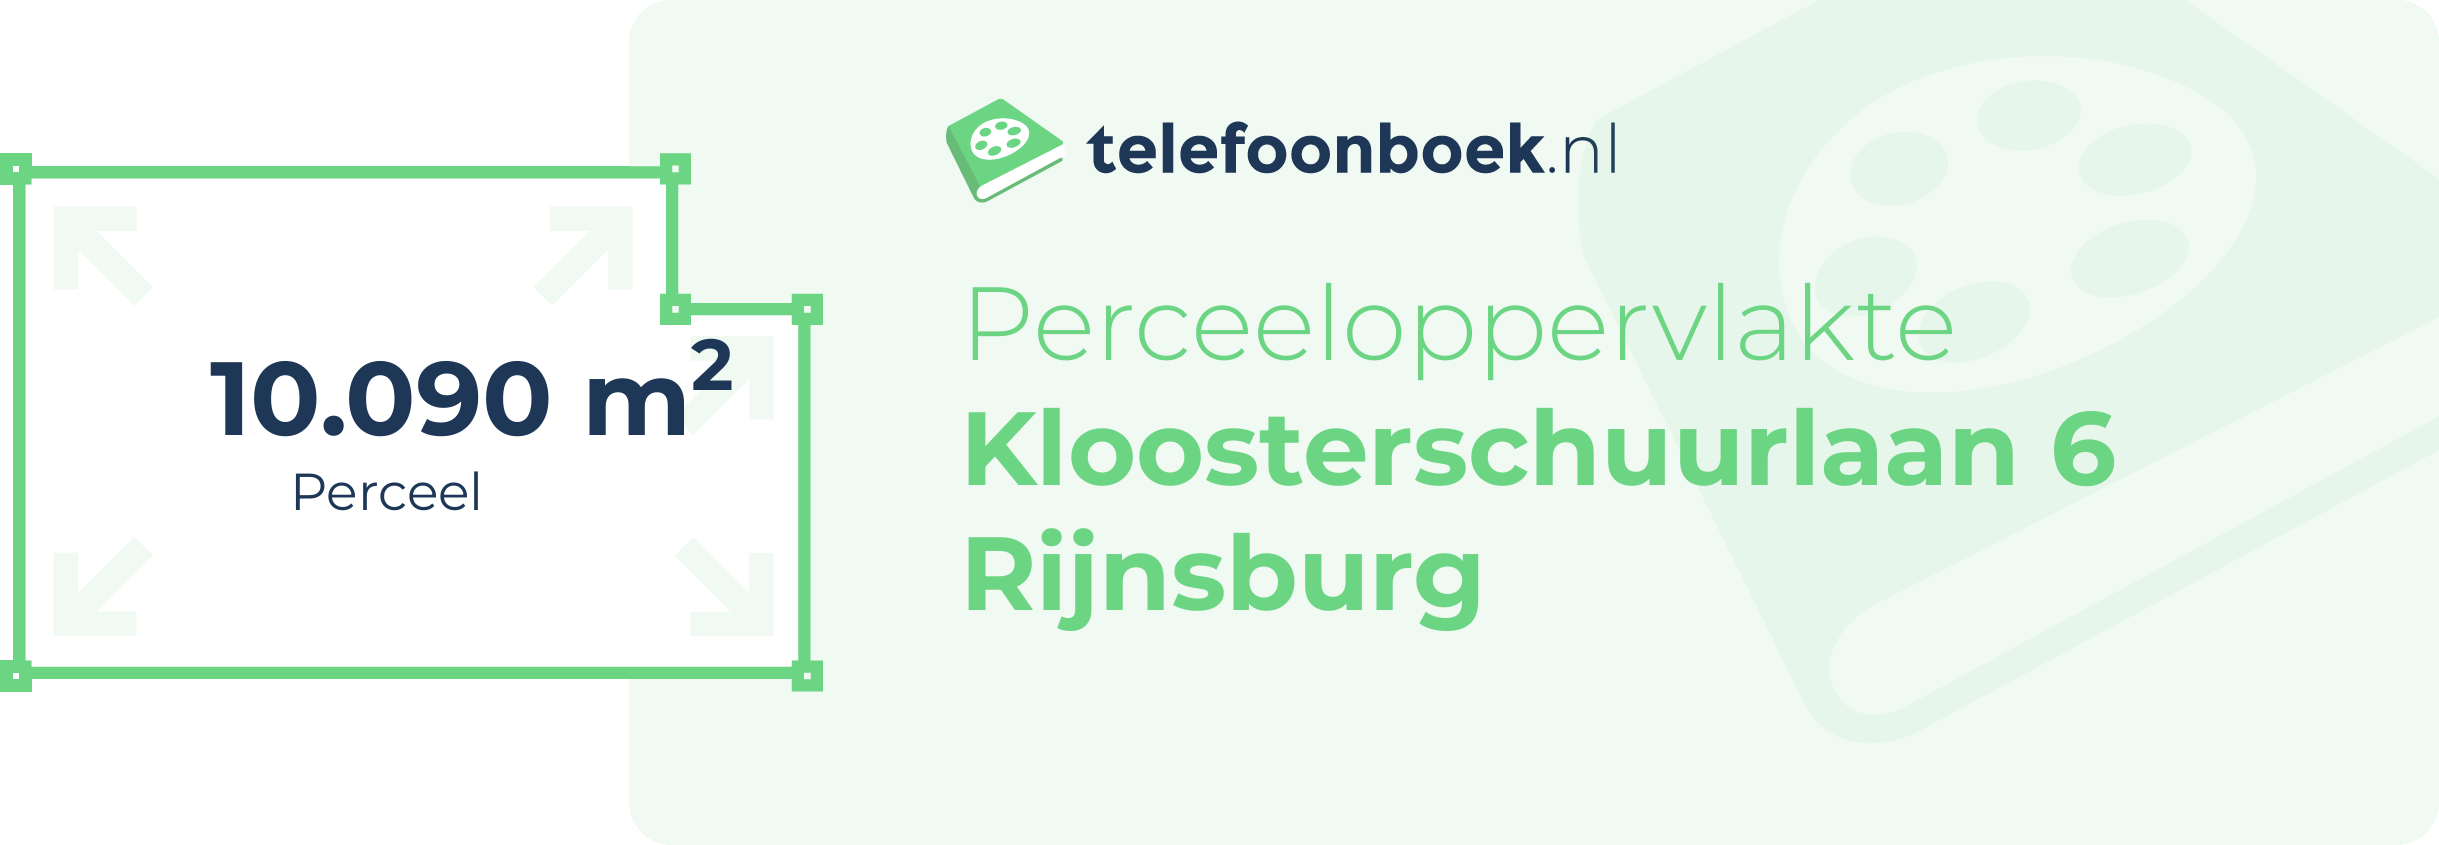 Perceeloppervlakte Kloosterschuurlaan 6 Rijnsburg